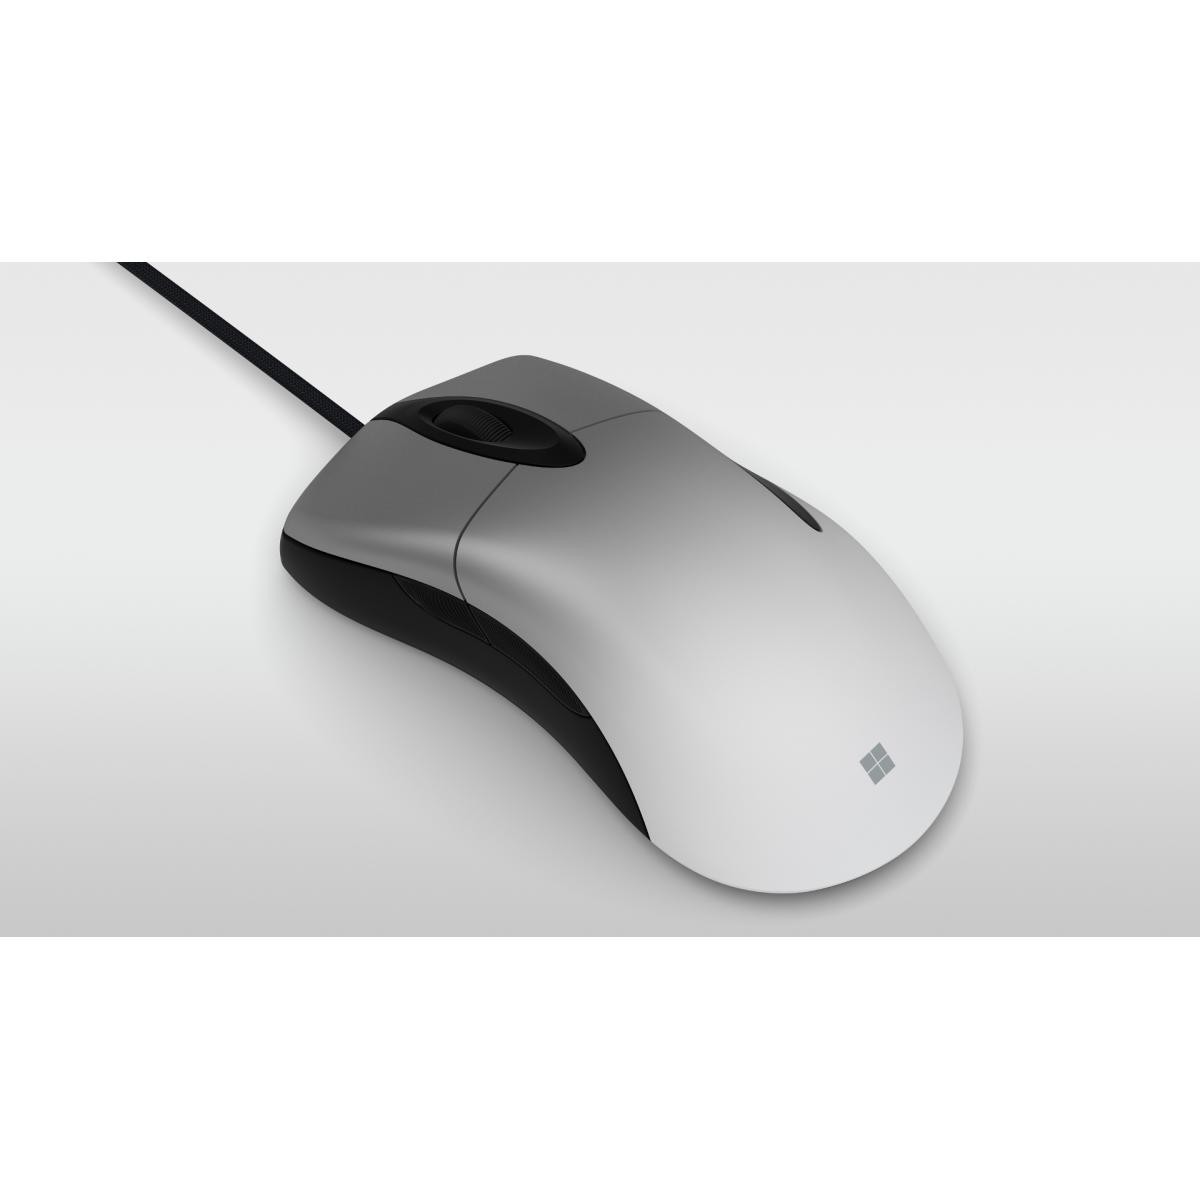 Port Design - PORT DESIGN Mouse Office Budget Pro Mouse Office Budget - Souris